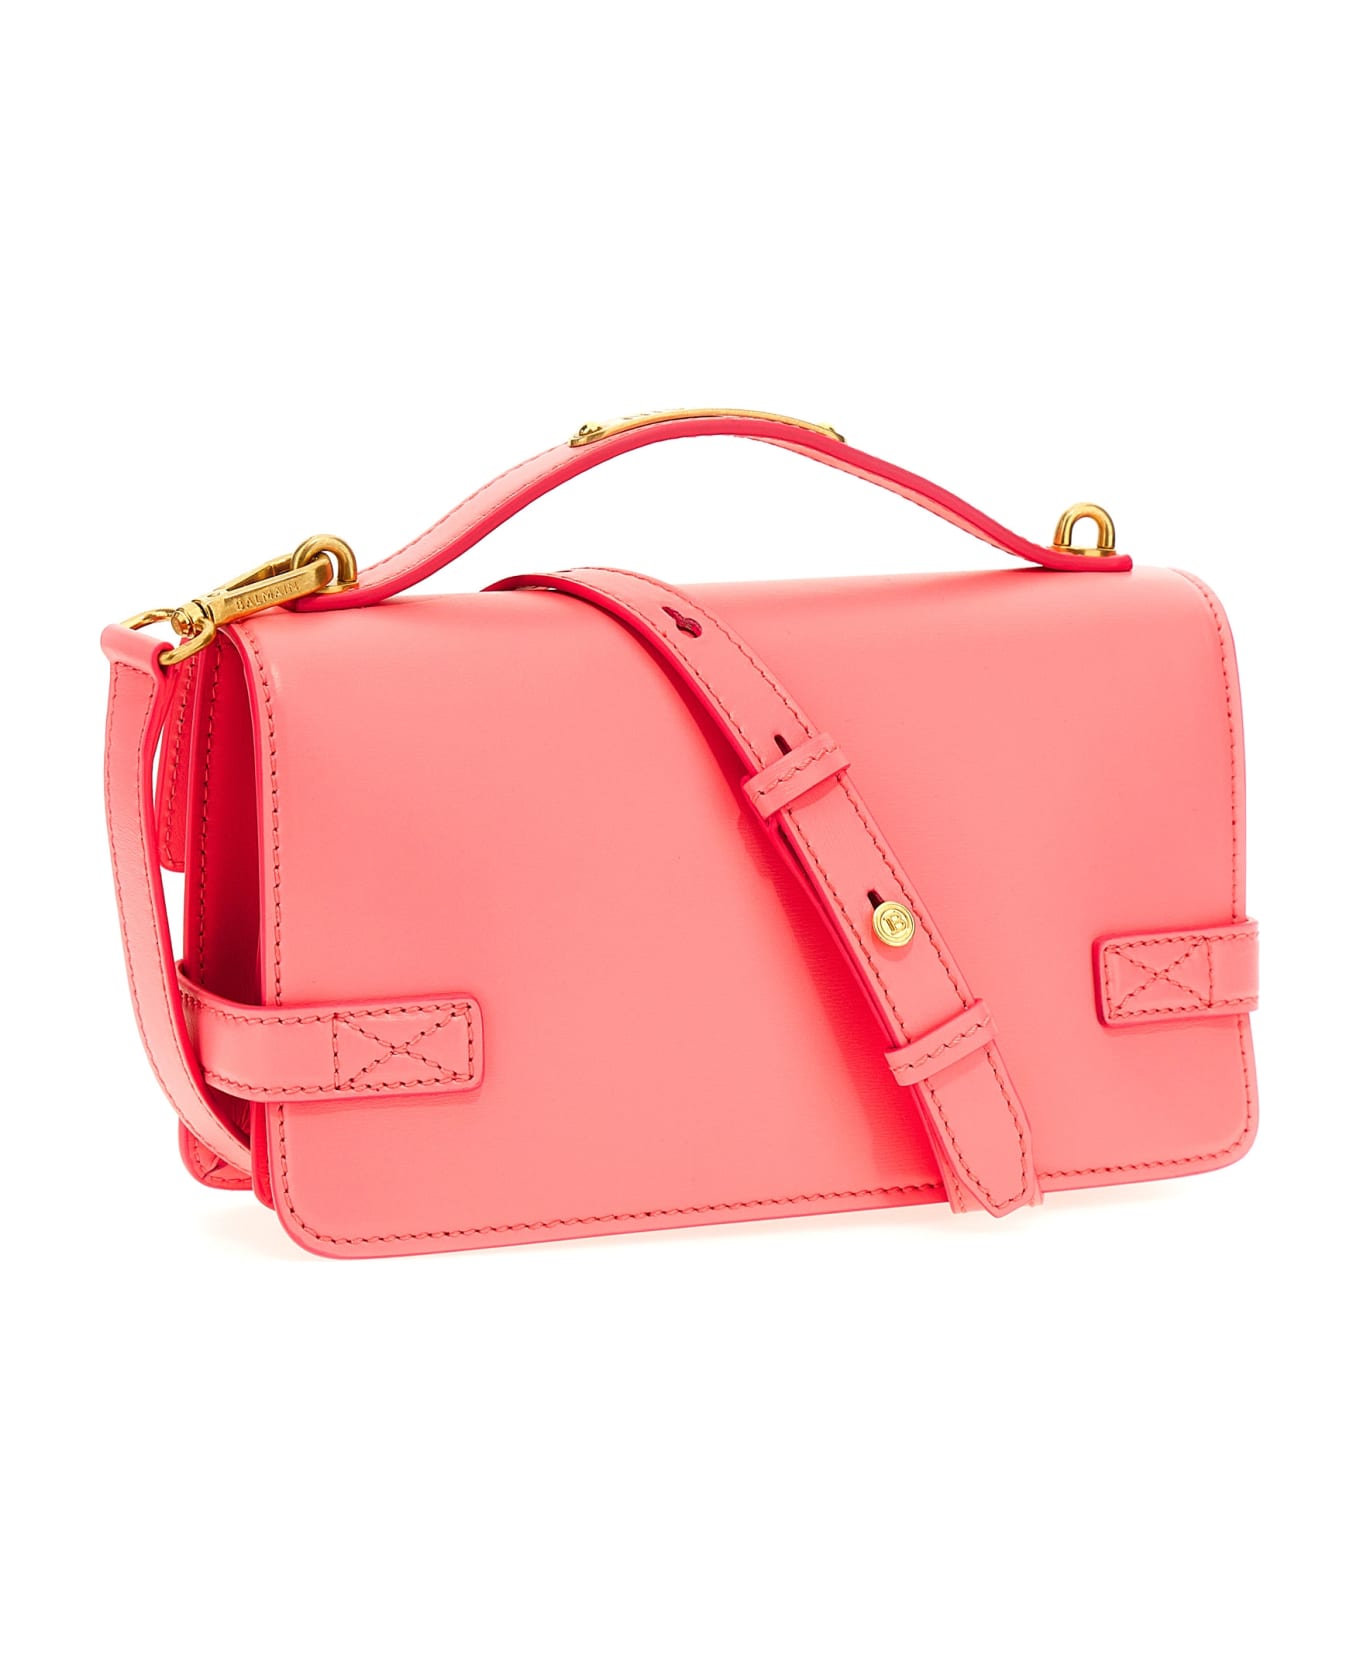 Balmain B Buzz 24 Handbag - Pink トートバッグ